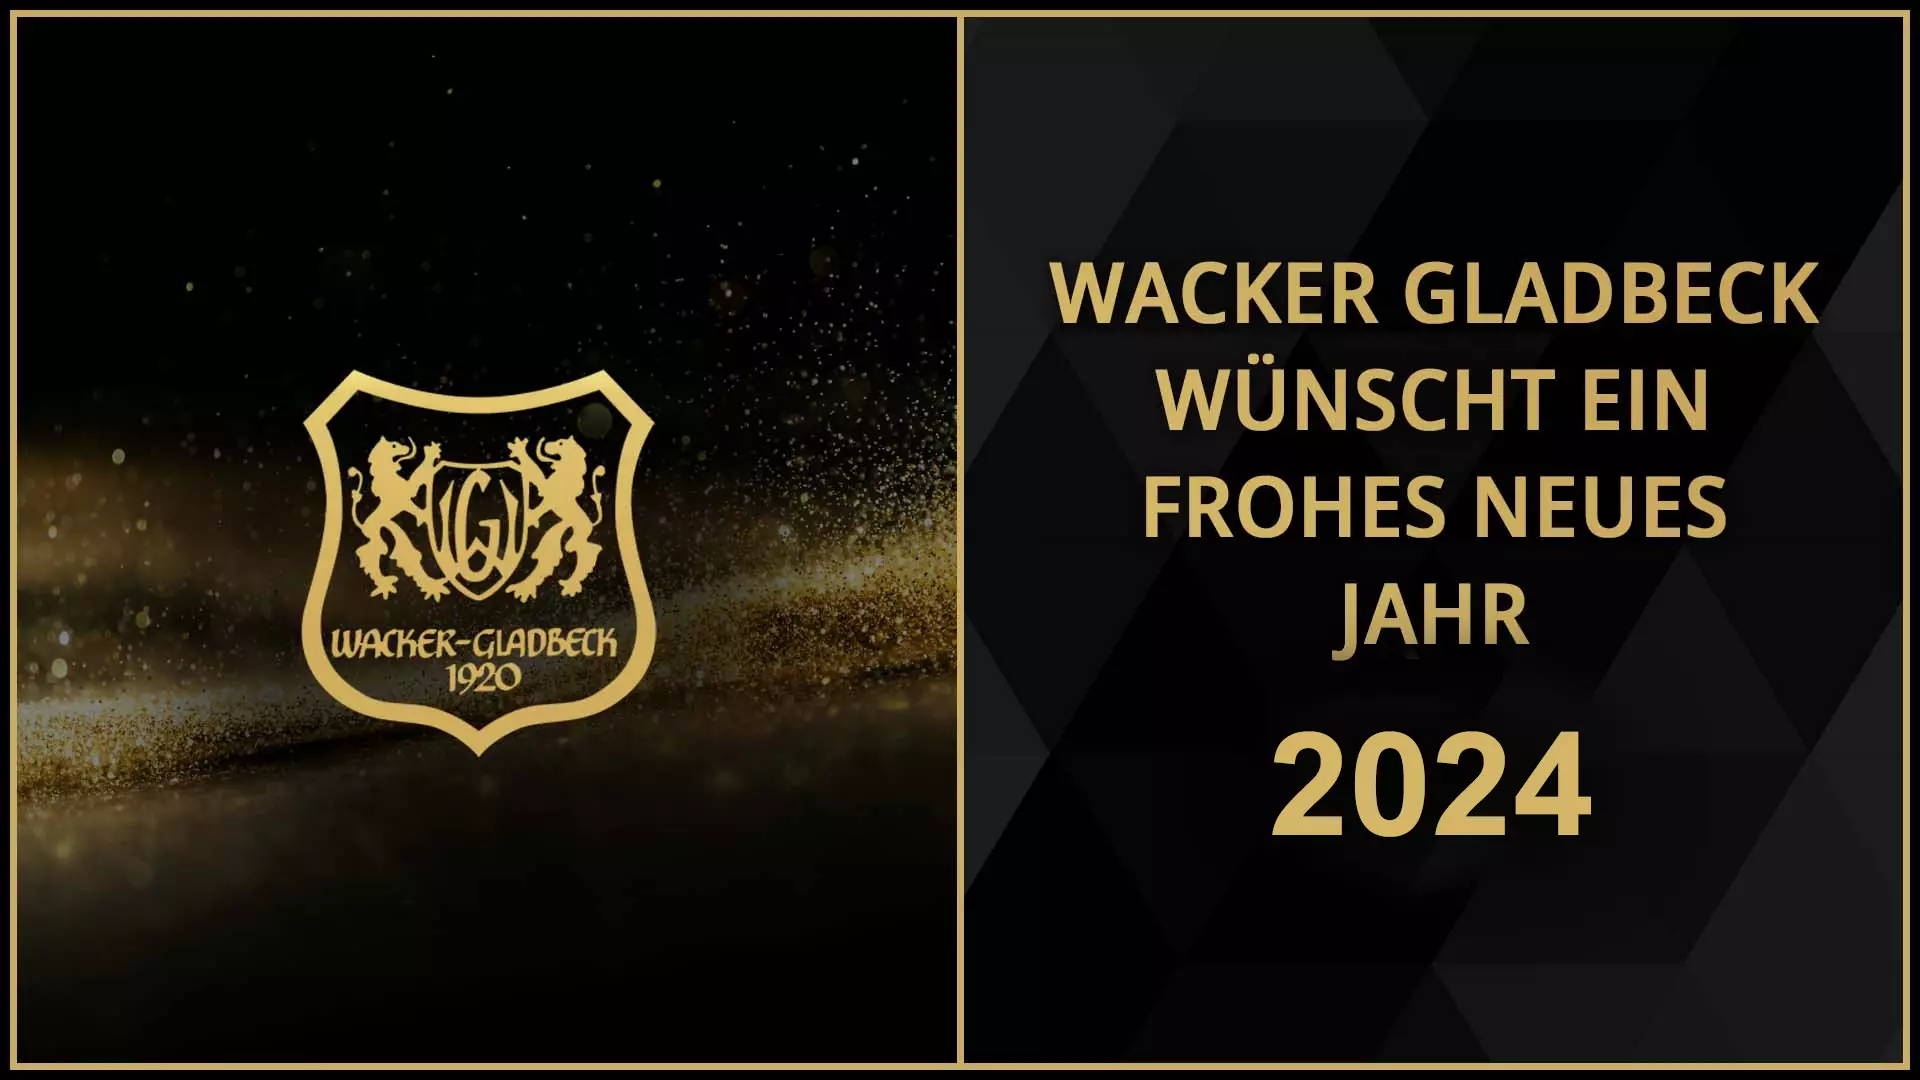 Wacker Gladbeck wünscht ein frohes neues Jahr 2024 - Wacker Gladbeck